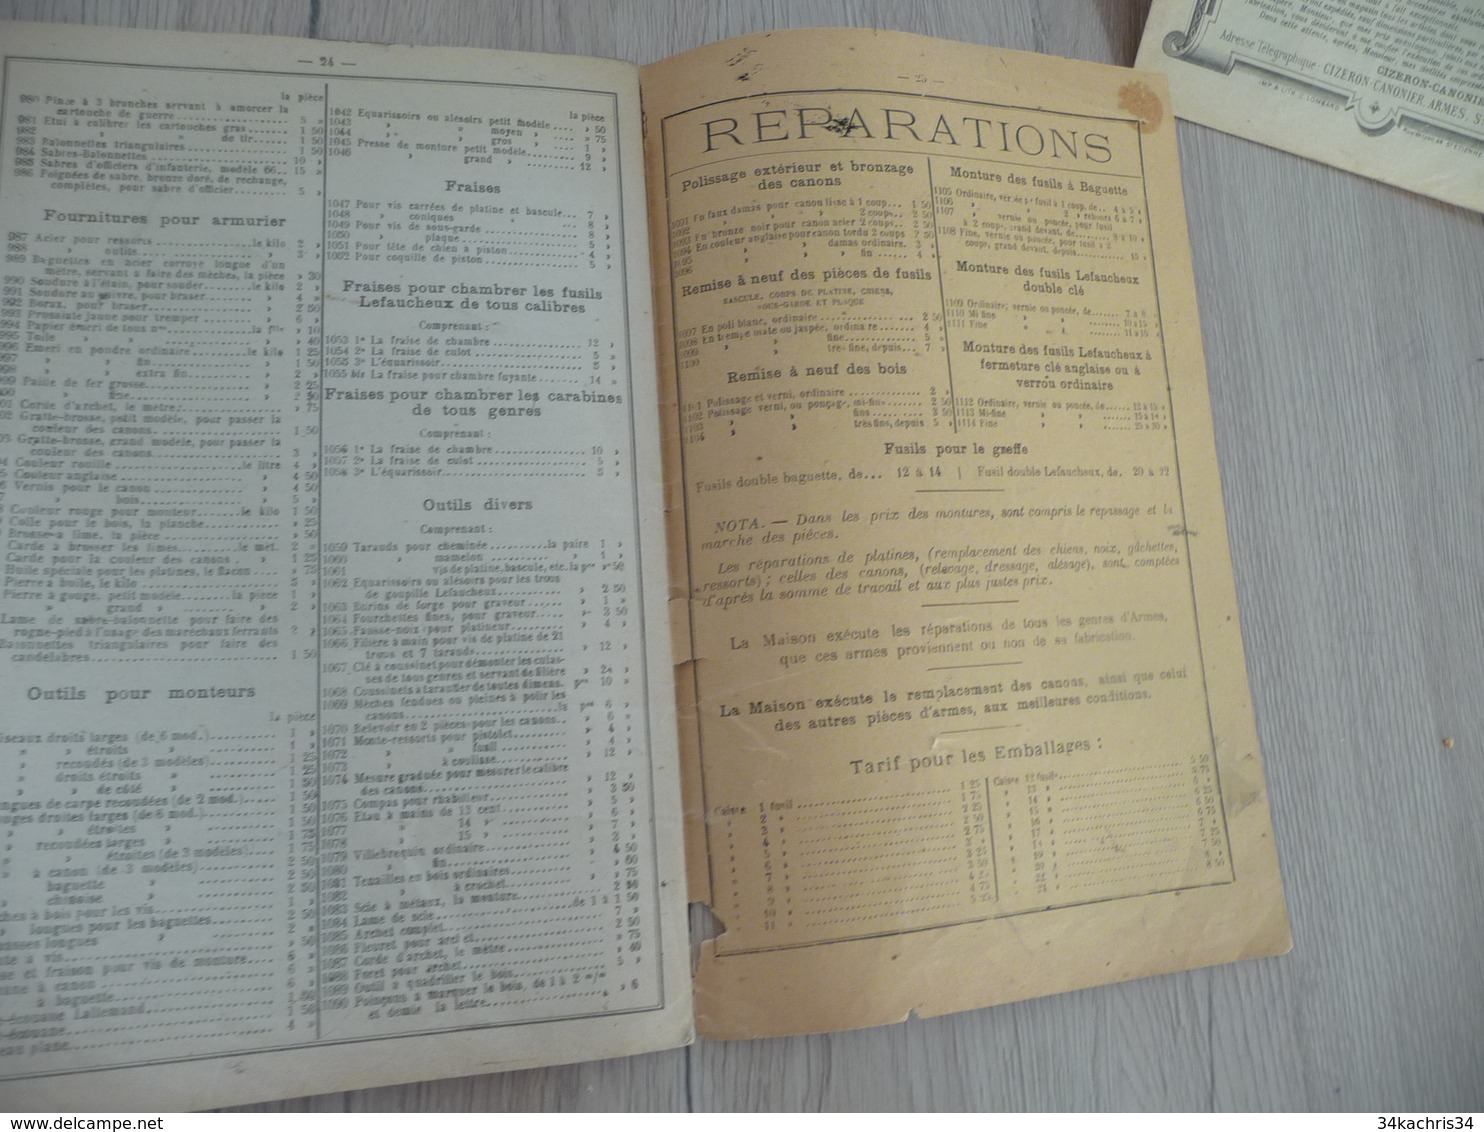 Catalogue Pub Publicitaire + additif Manufacture d'Armes de guerre de Tir Gizeron Canonier 1894/1895 Saint Etienne